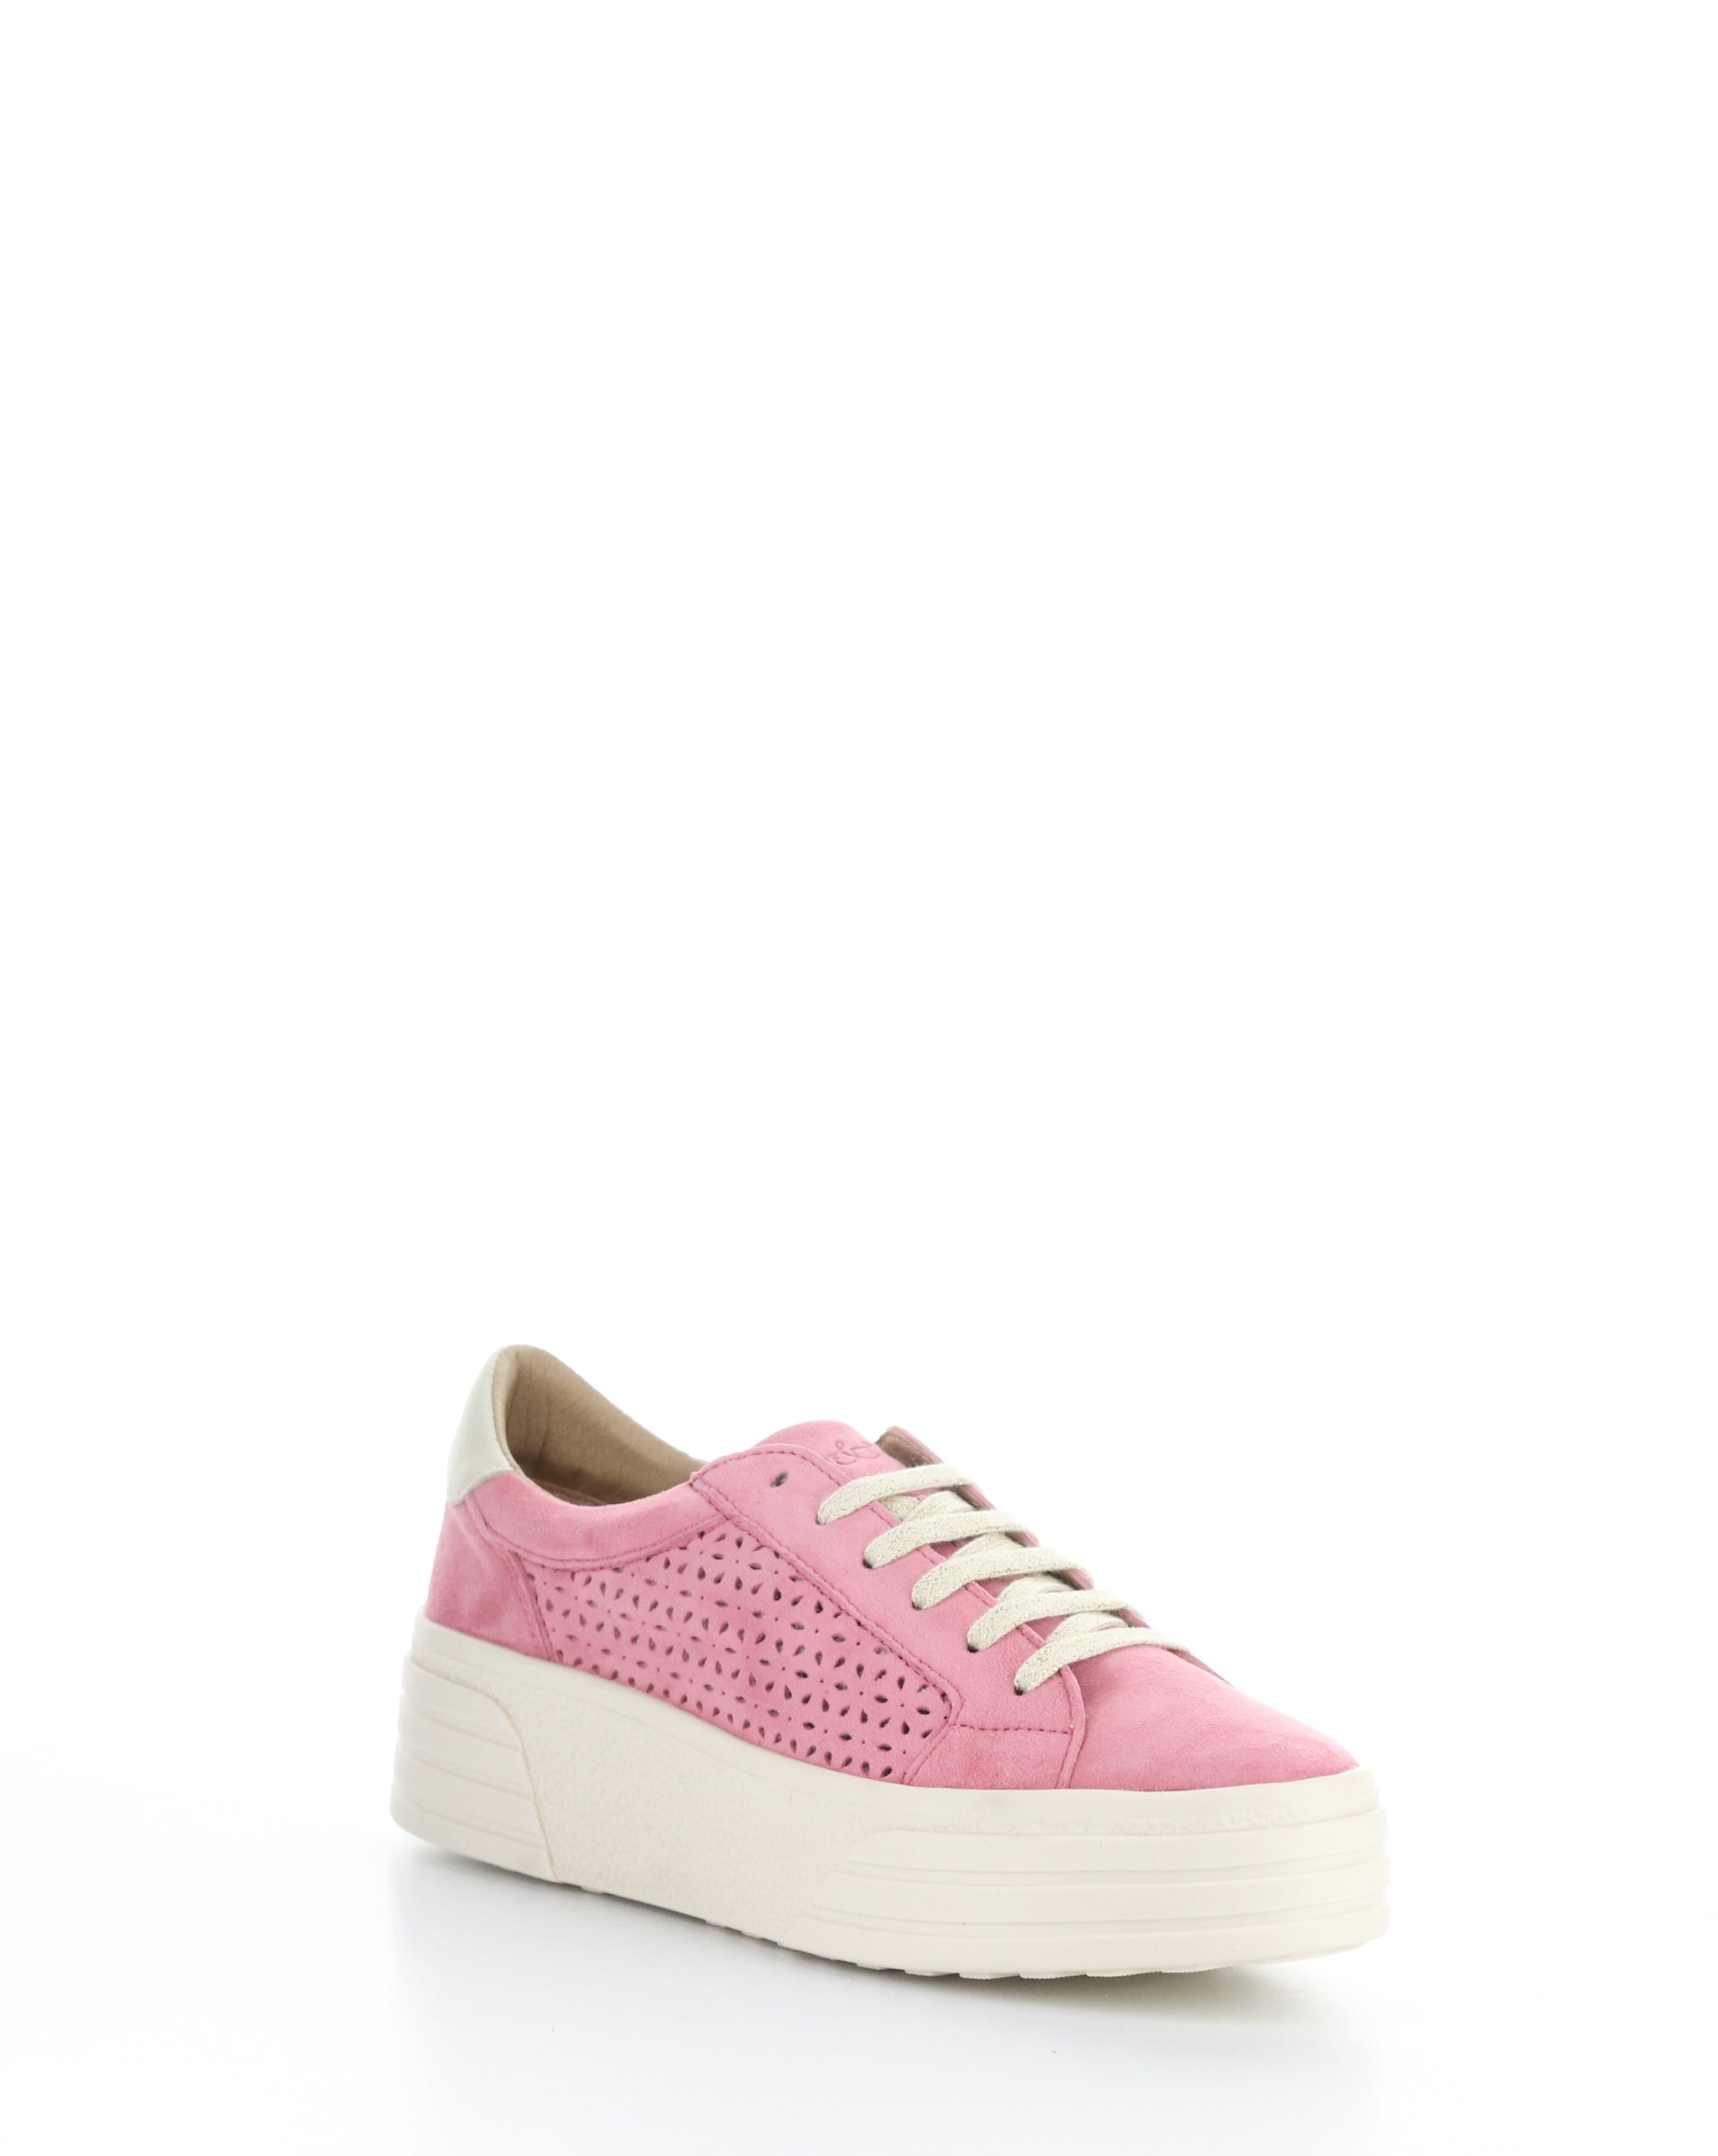 Bos & Co Lotta Sneaker - Pink Rose